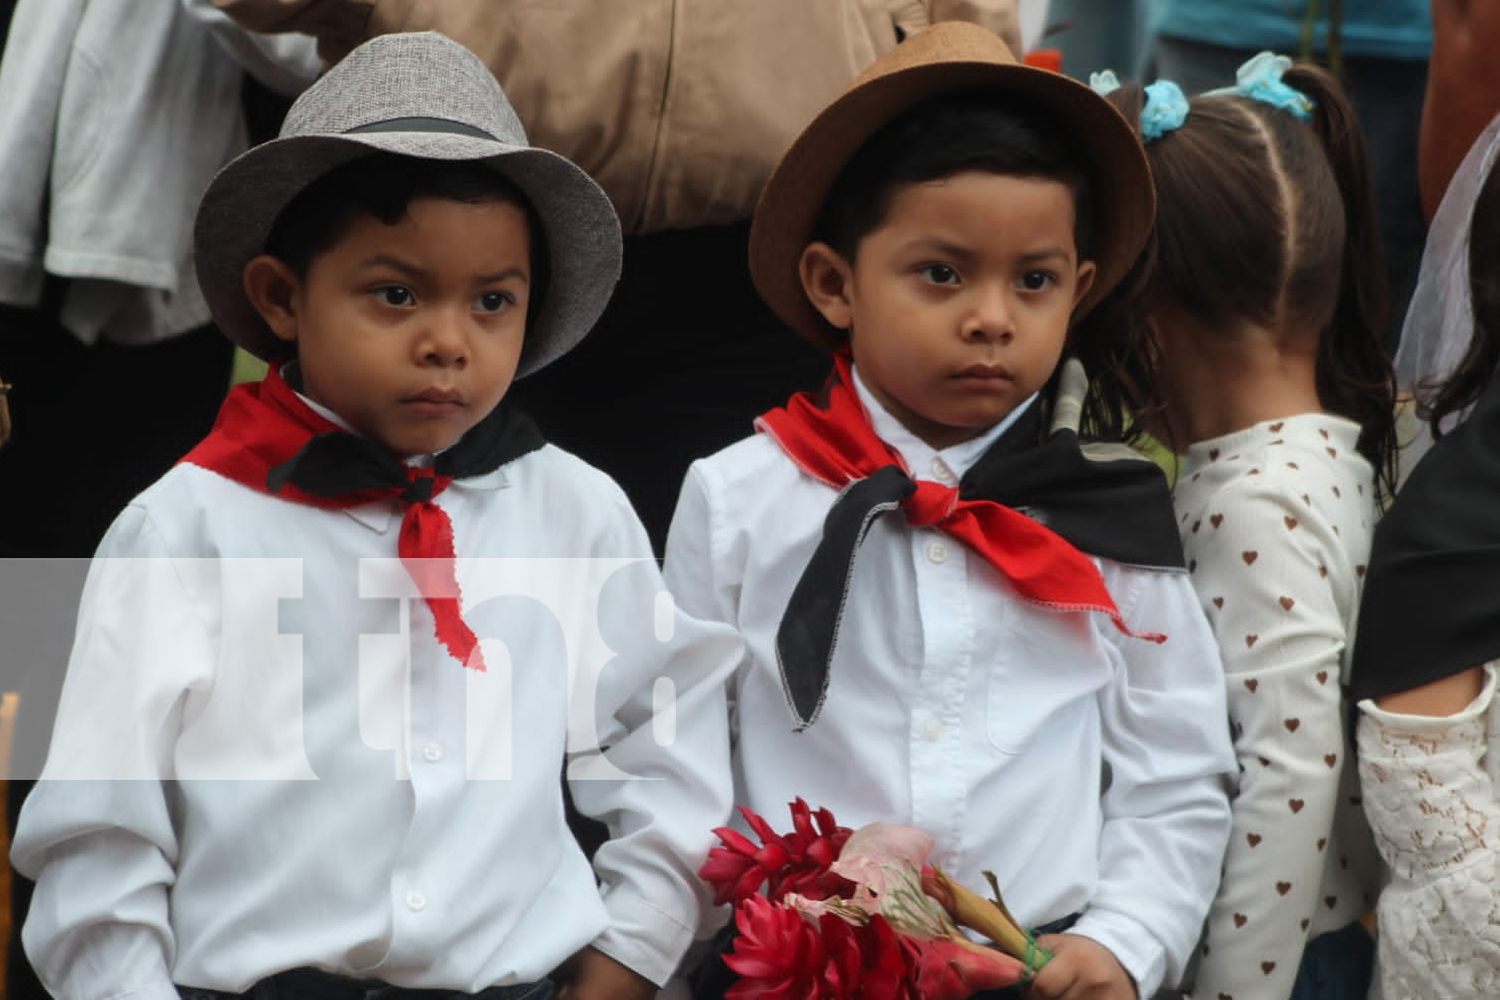 Foto: Nicaragua conmemoró el natalicio de Sandino "General de hombres y mujeres libres"/TN8